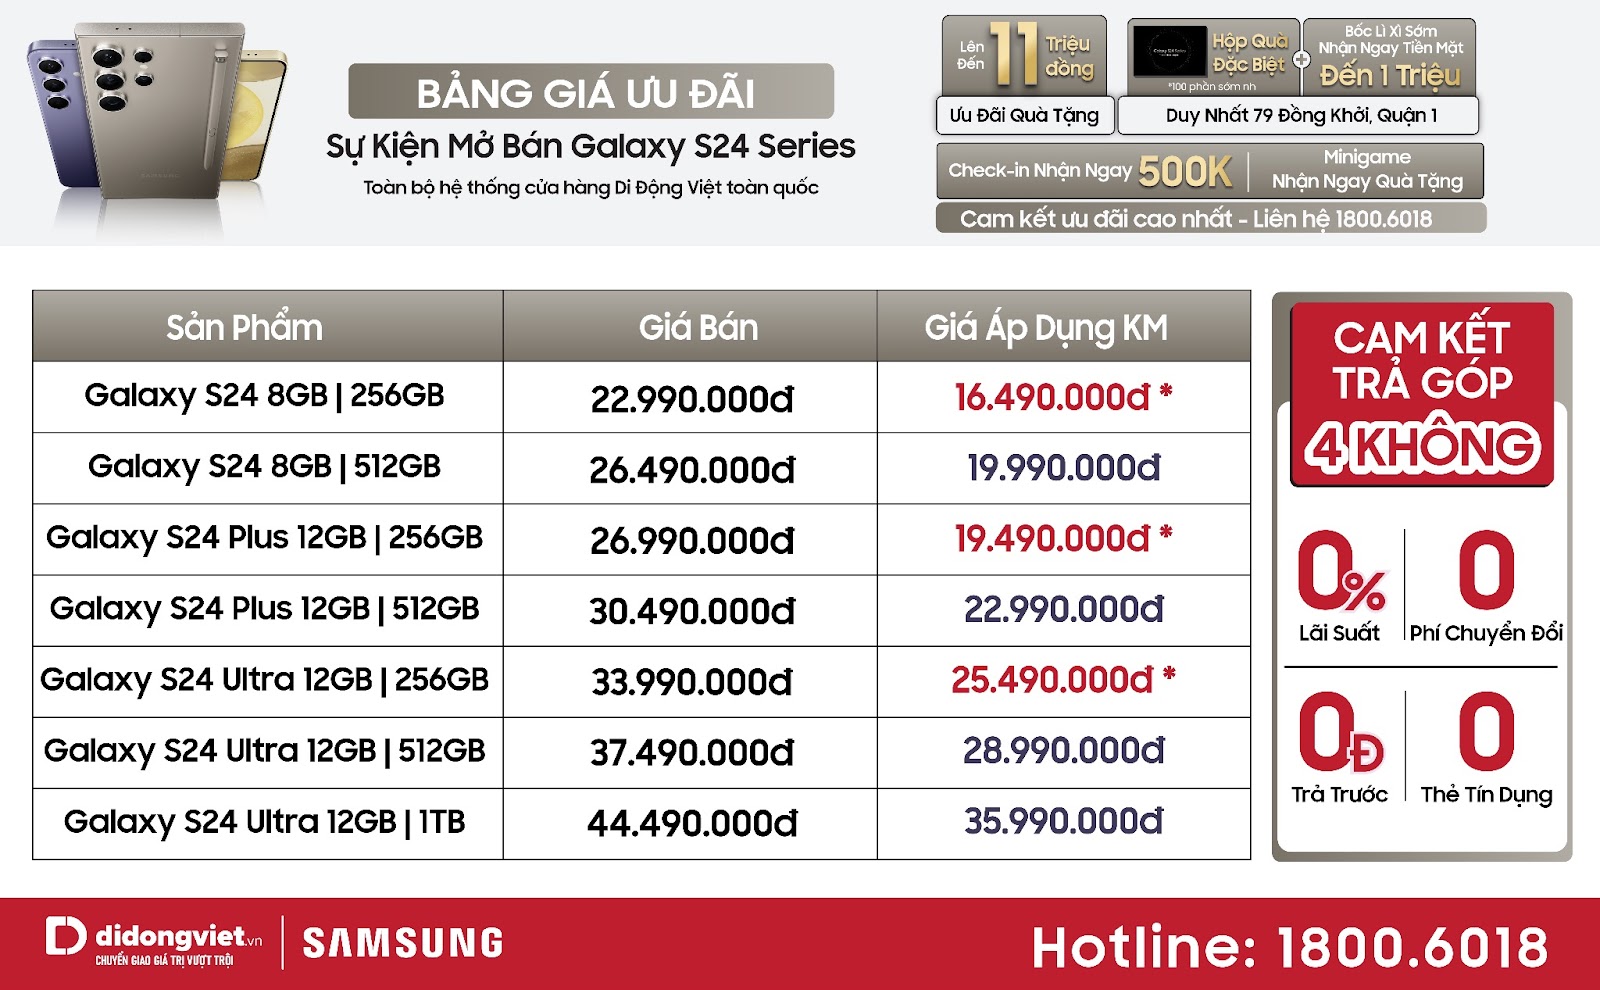 Di Động Việt mở bán sớm Galaxy S24 series, ưu đãi đến 11 triệu đồng, dùng thử 14 ngày miễn phí - ftYnDfxLTh39jwabpxTKZDXBc7J4s c0Hr3c8T04bJF b3al7XXIBKeQD